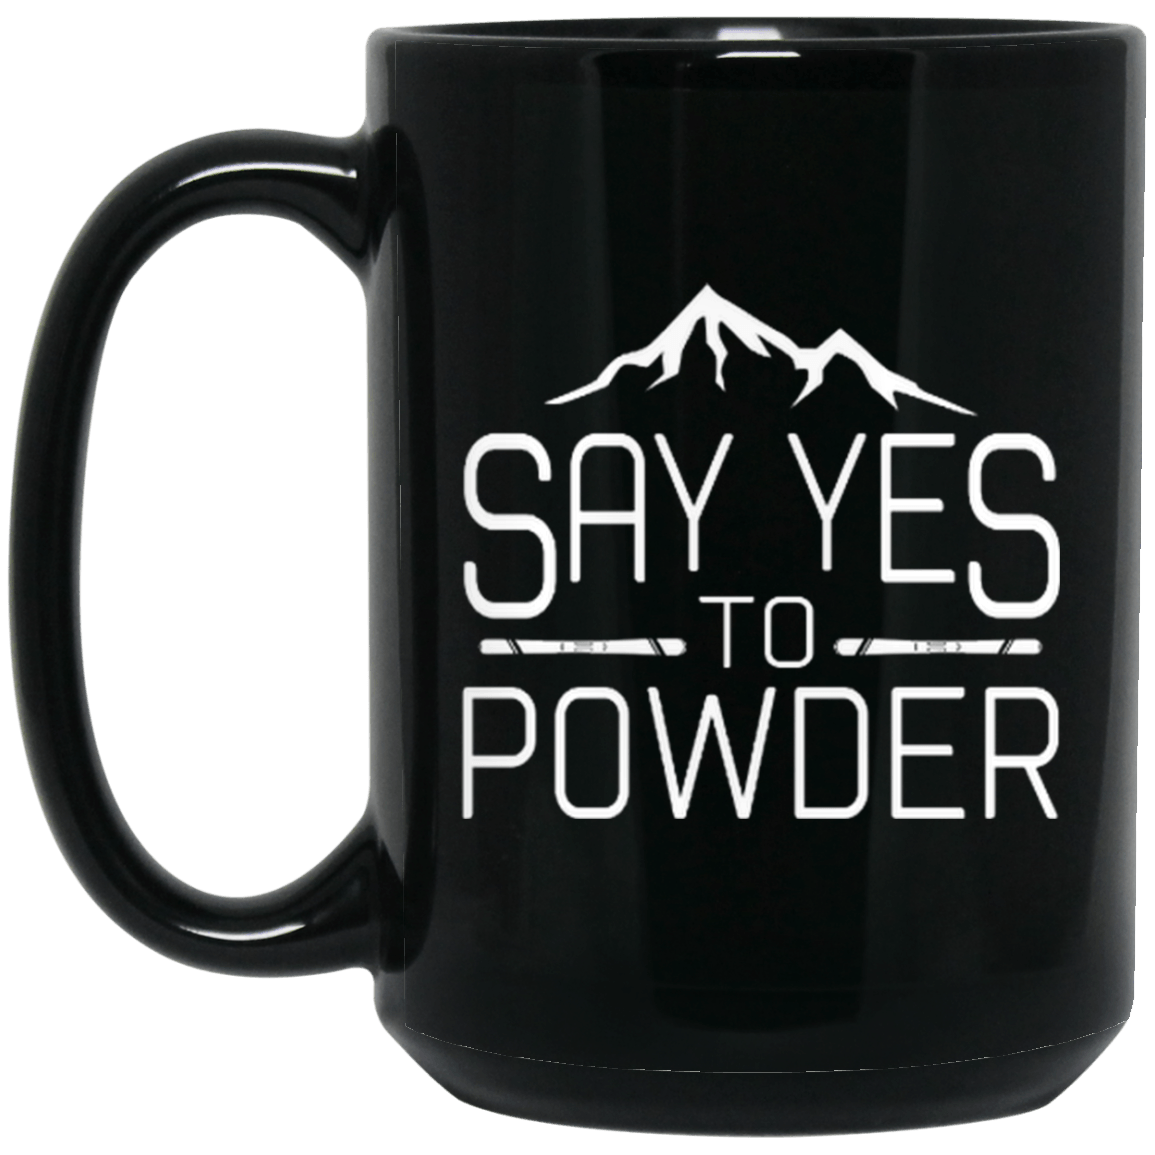 Say Yes To Powder Black Mug - Powderaddicts